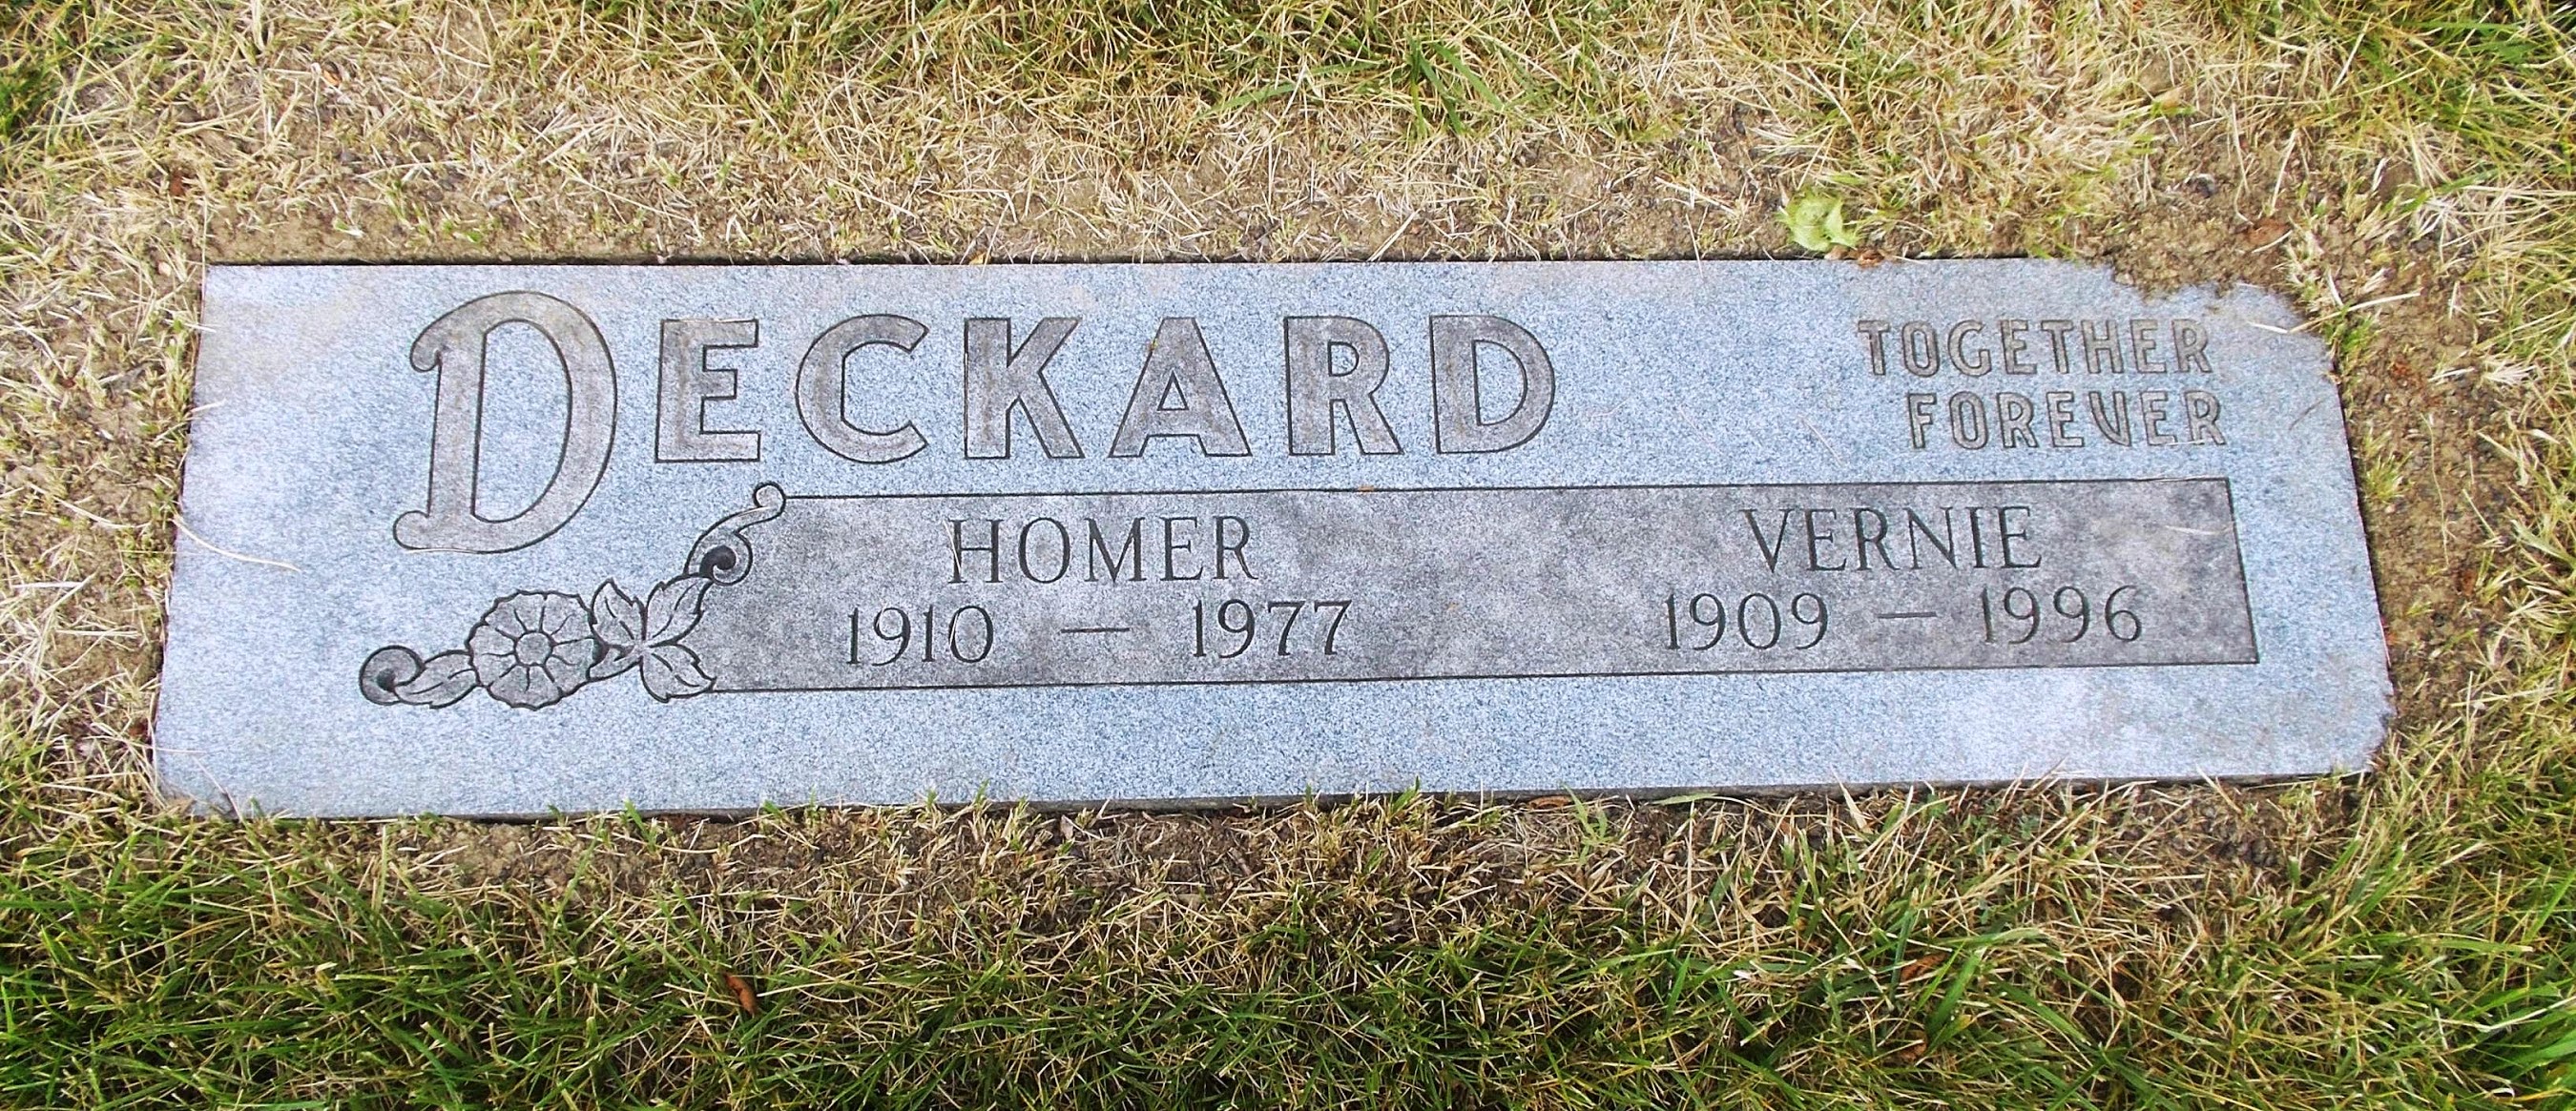 Homer Deckard